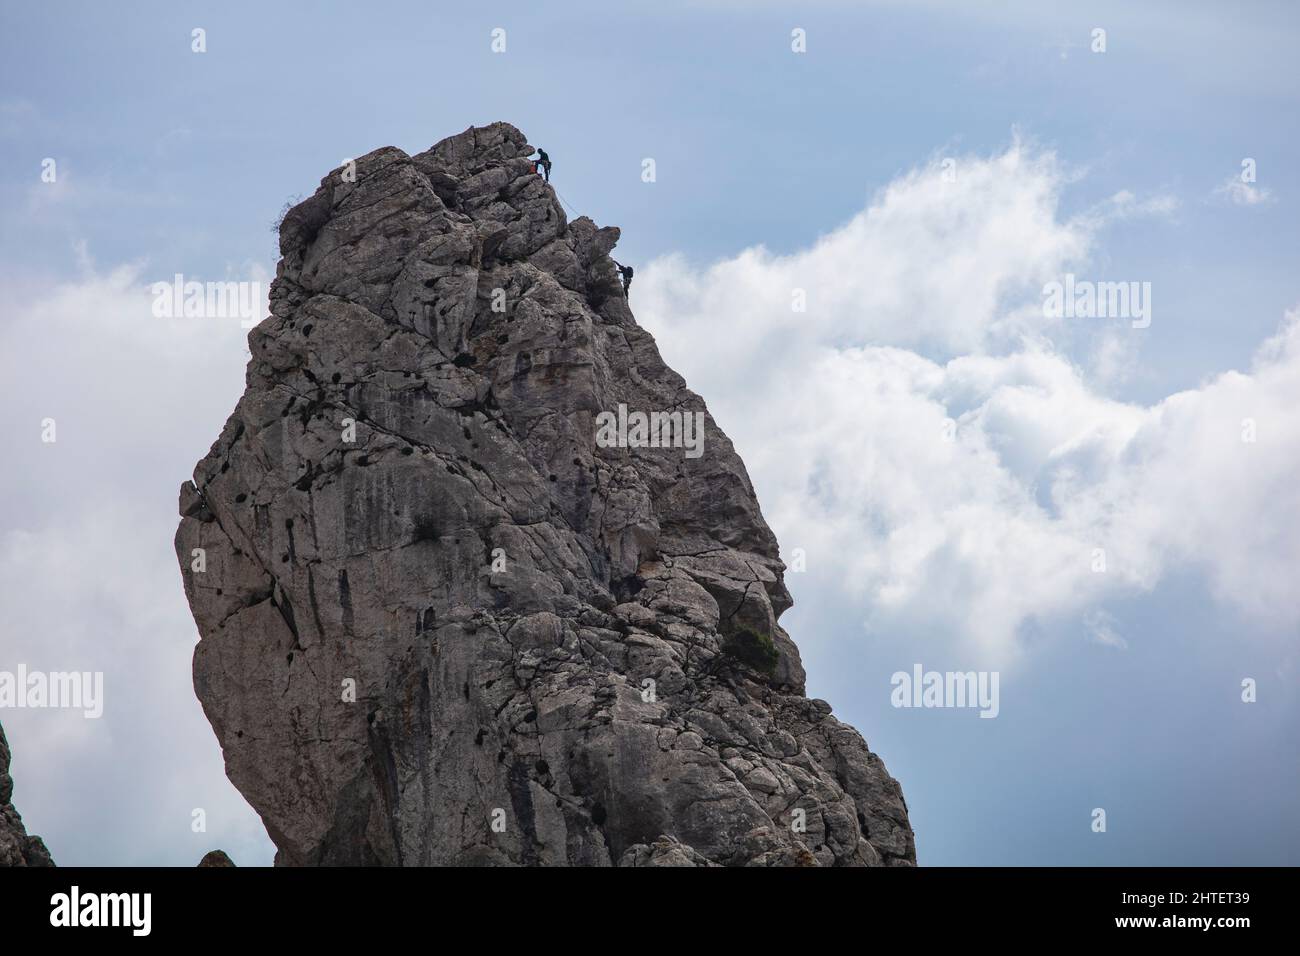 Die Kalksteinfelsen in der Nähe von Ventas de Zafarraya sind bei Spaziergängern und Kletterern beliebt. Stockfoto